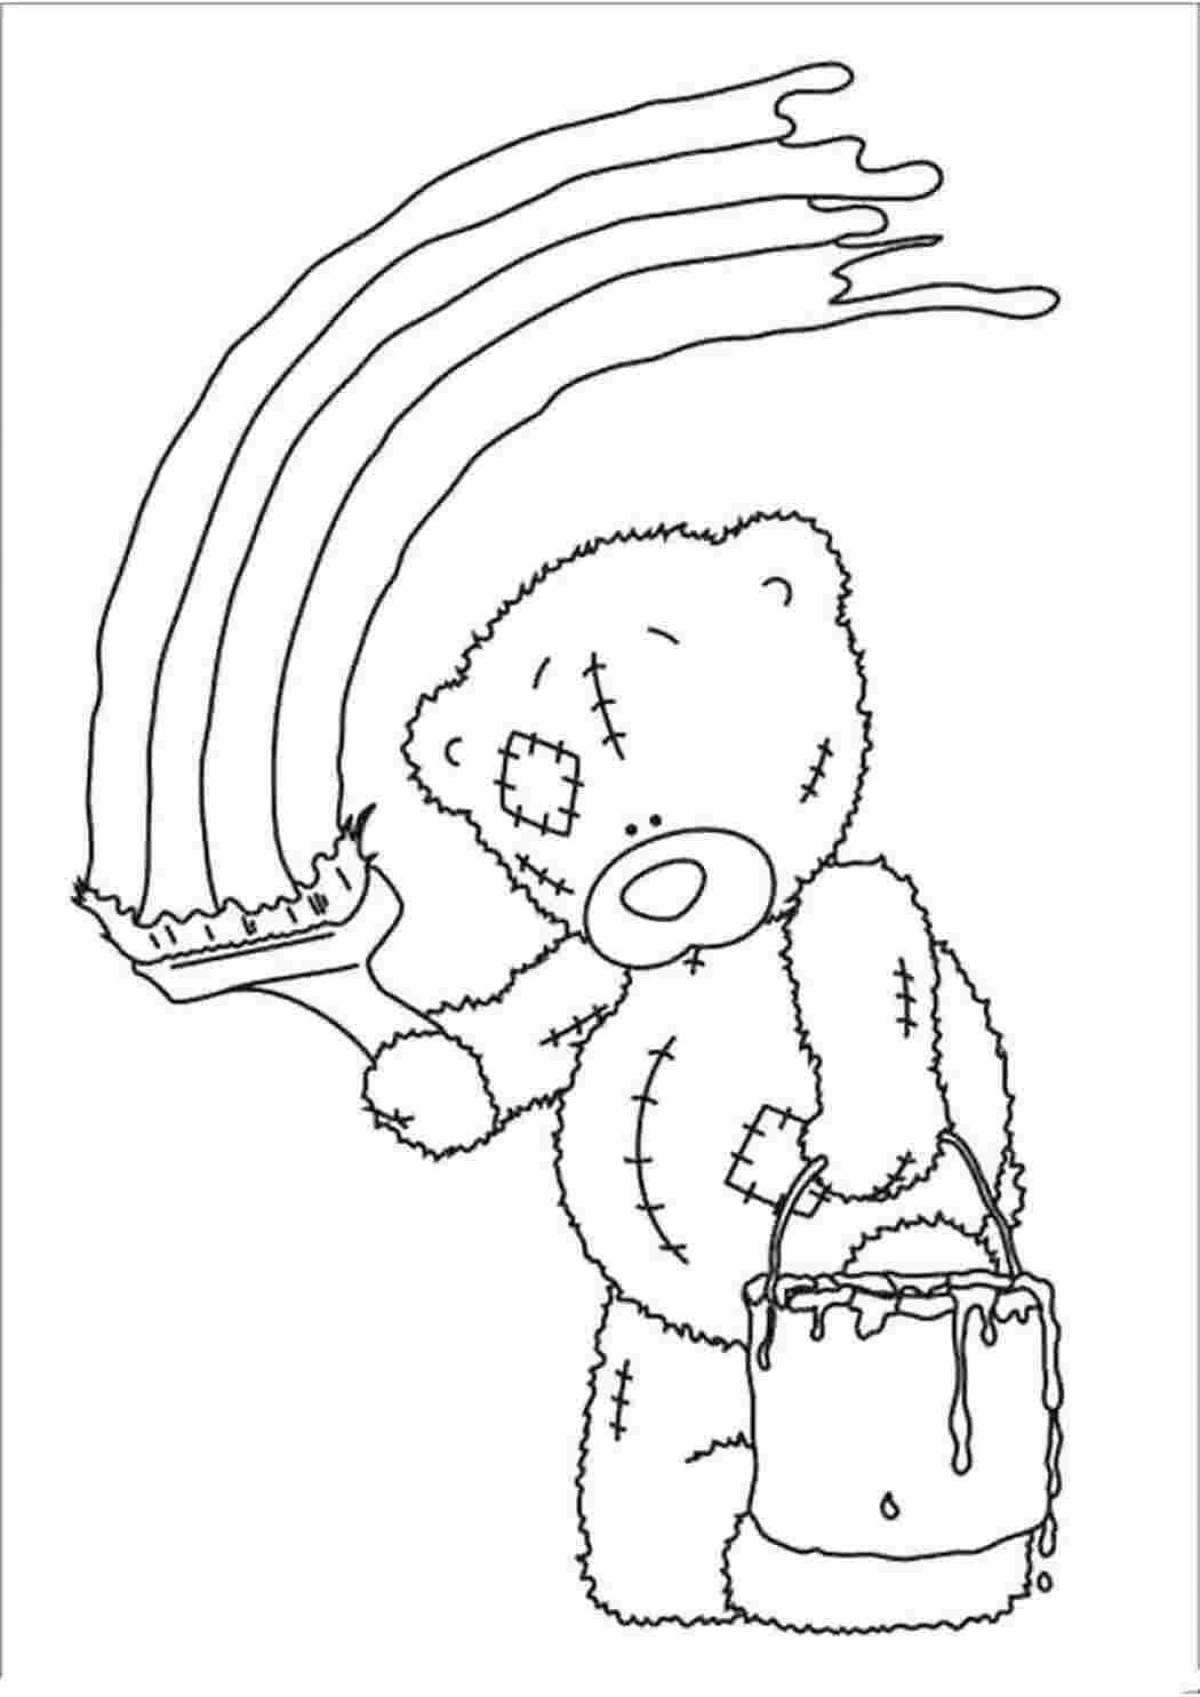 Adorable teddy bear coloring book